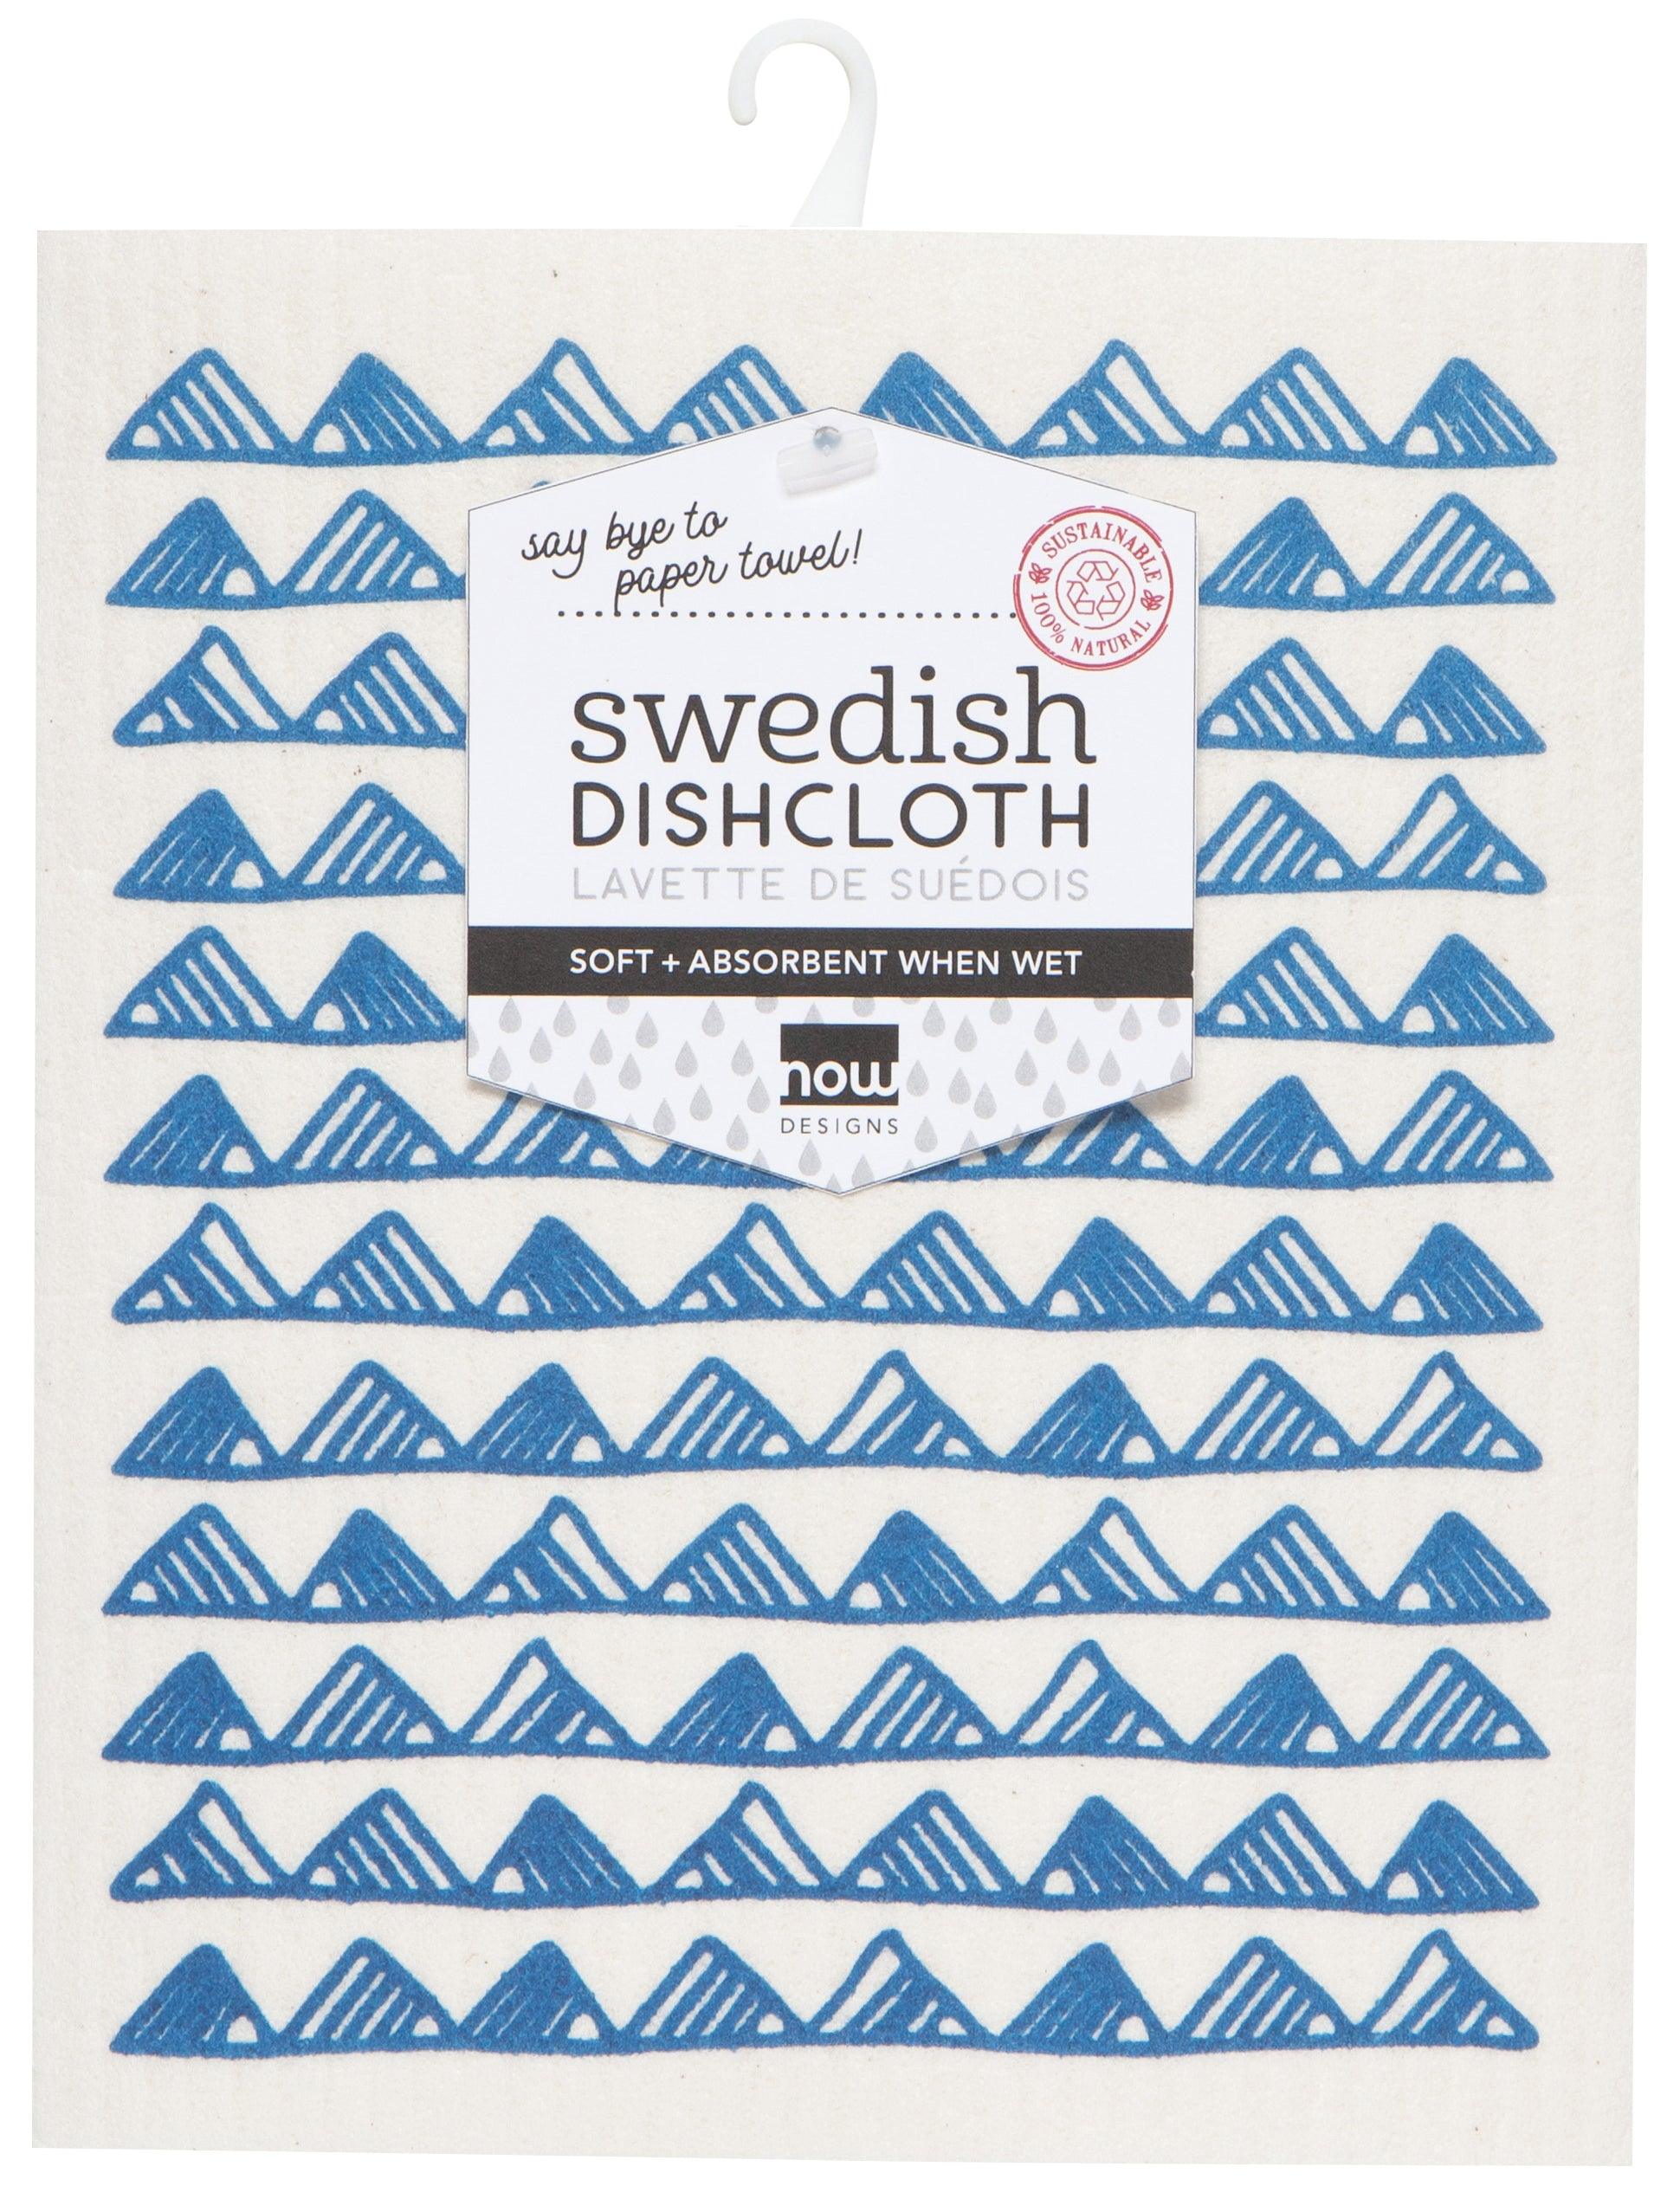 Royal Swedish Dish Cloth